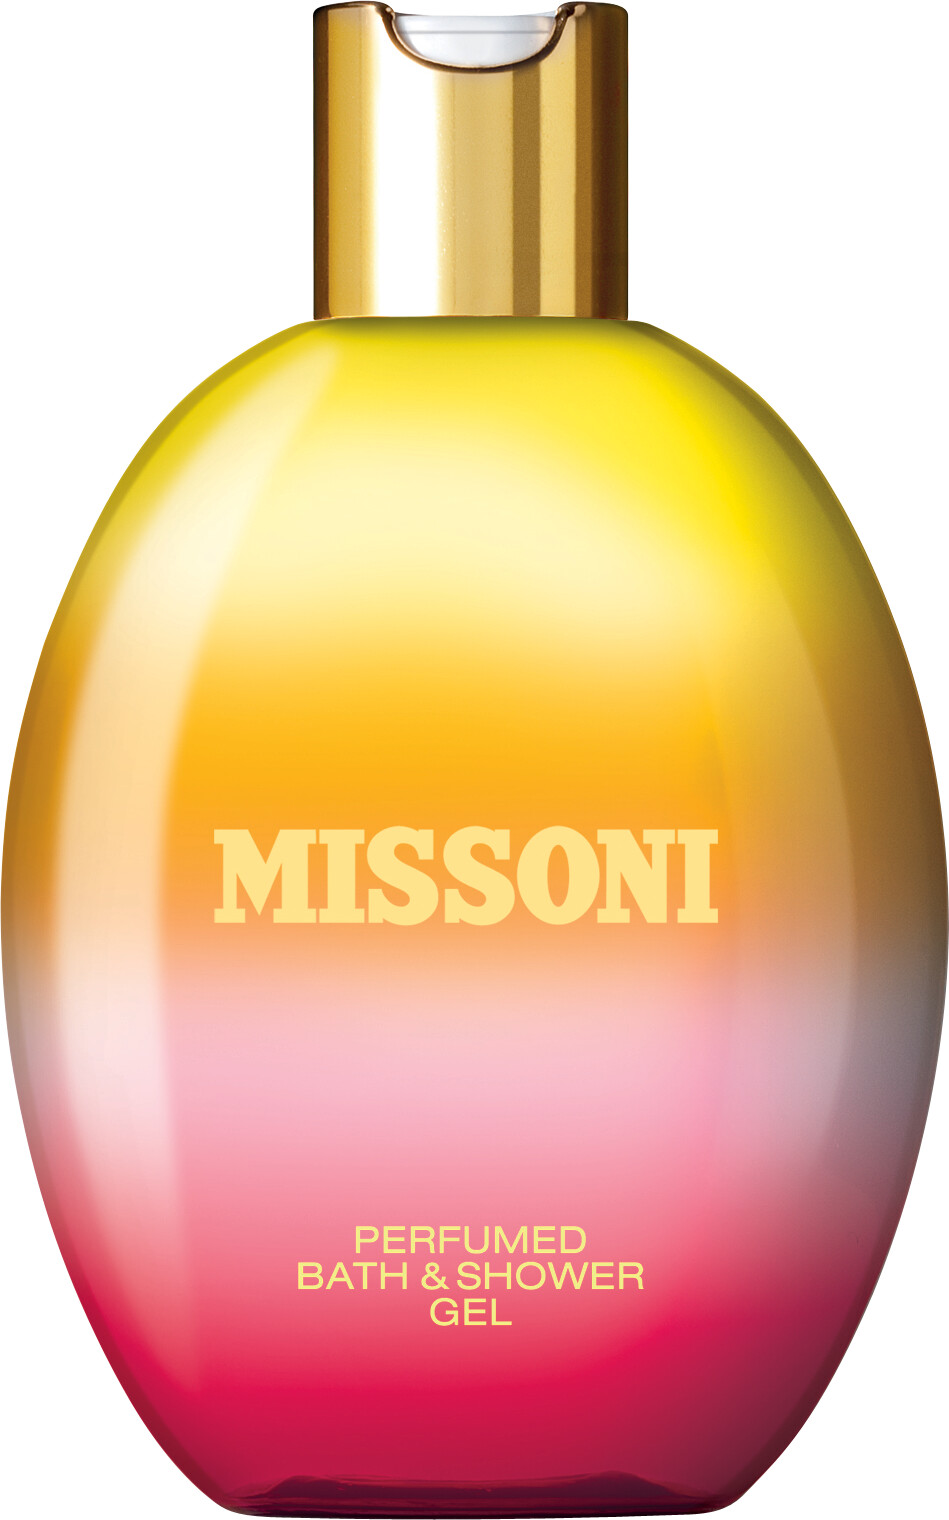 Missoni Perfumed Bath & Shower Gel 250ml